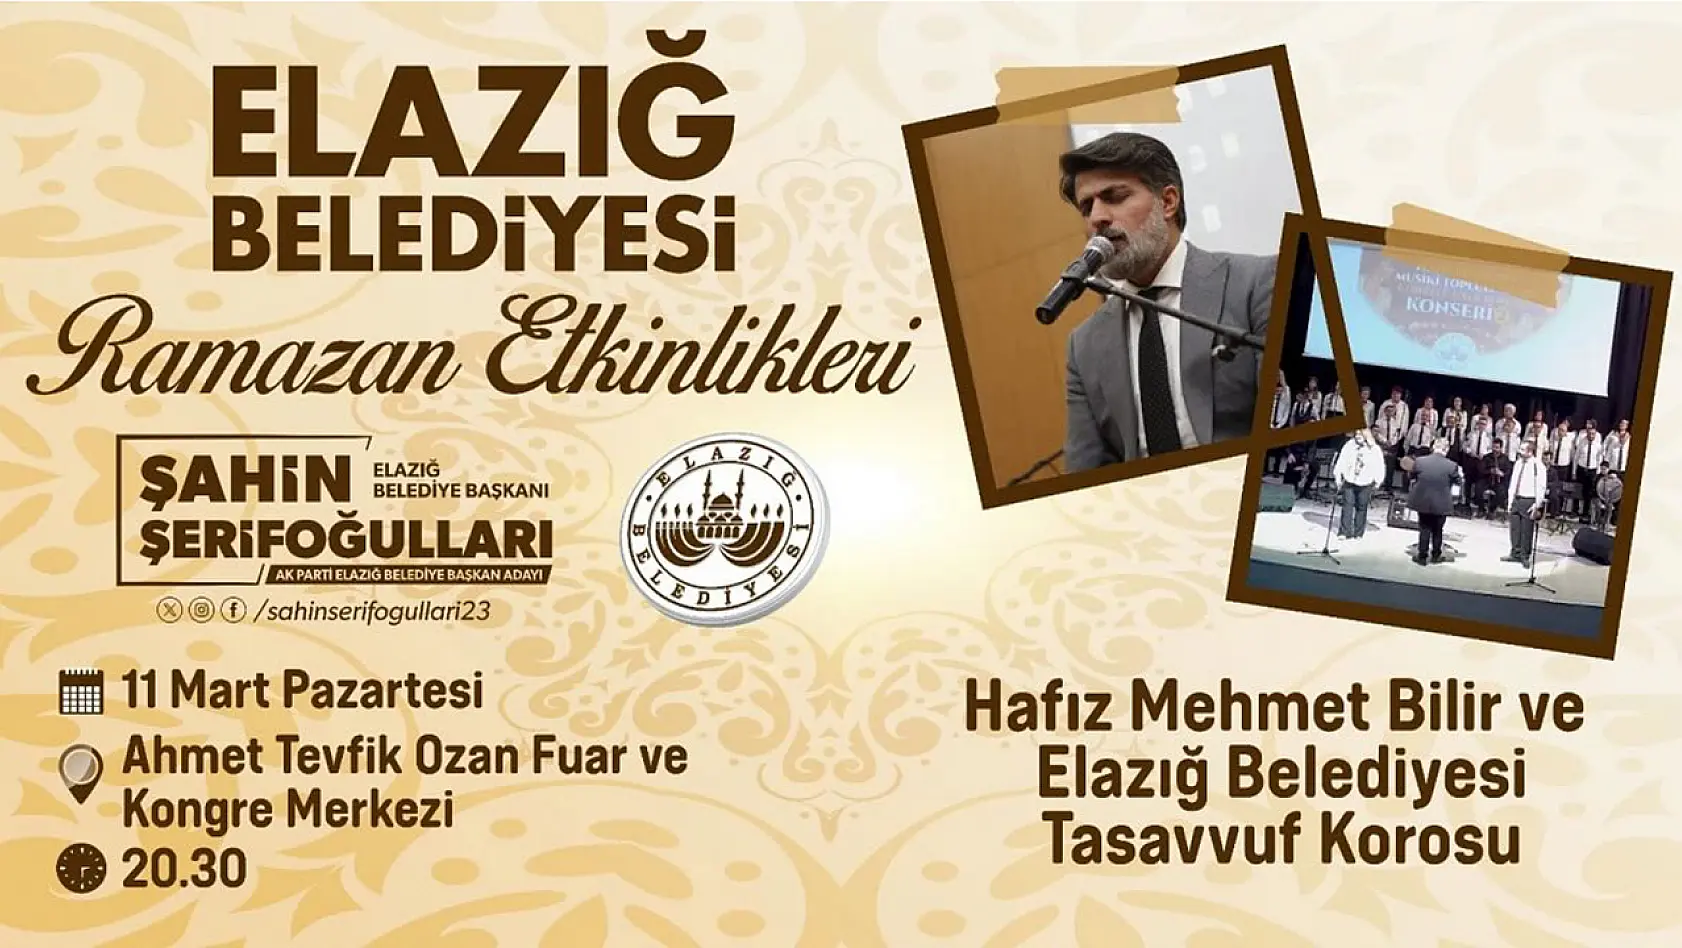 Elazığ Belediyesi Geleneksel Ramazan Etkinlikleri Başlıyor